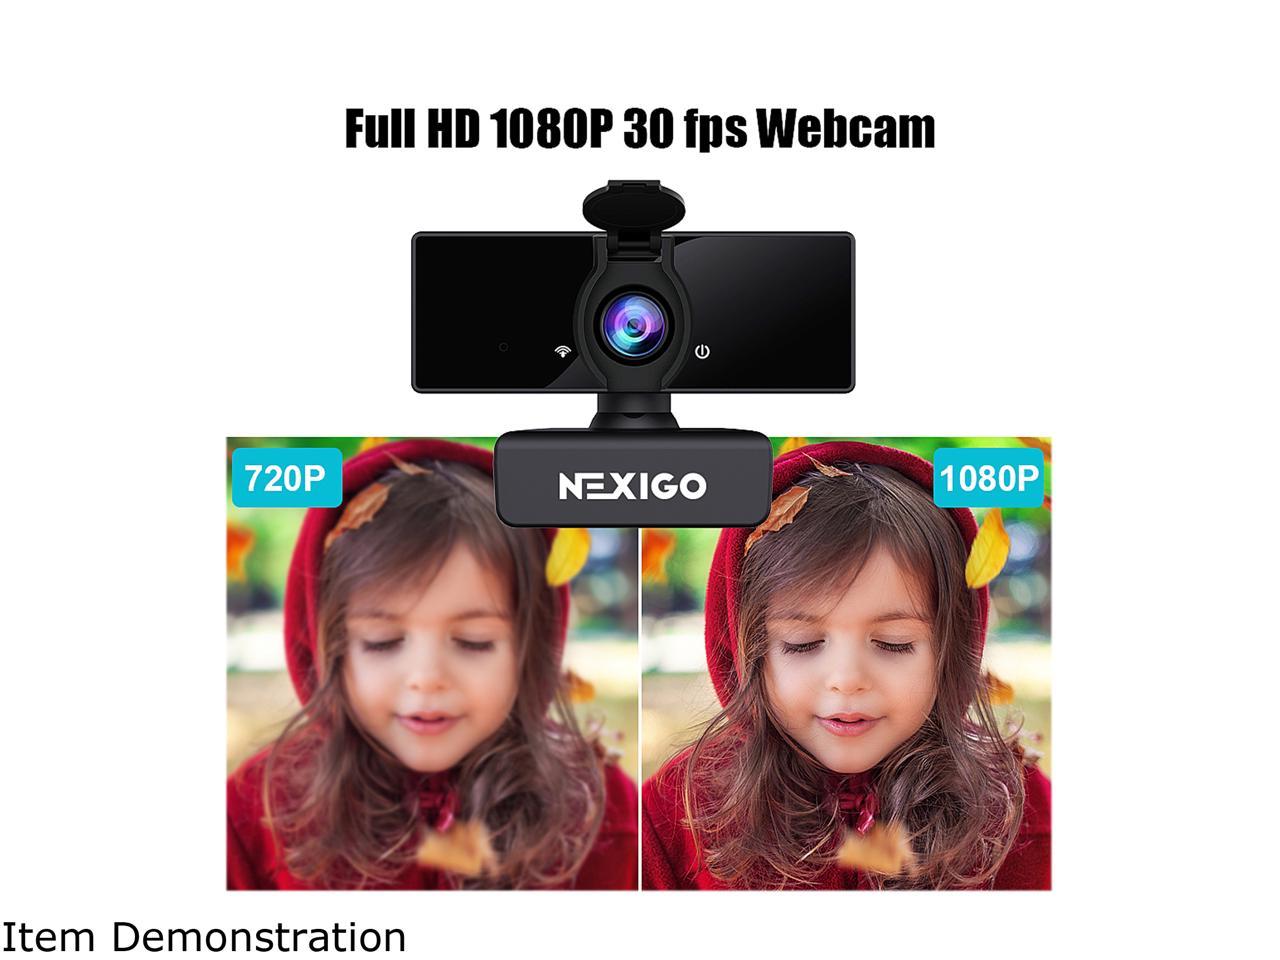 nexigo webcam driver mac